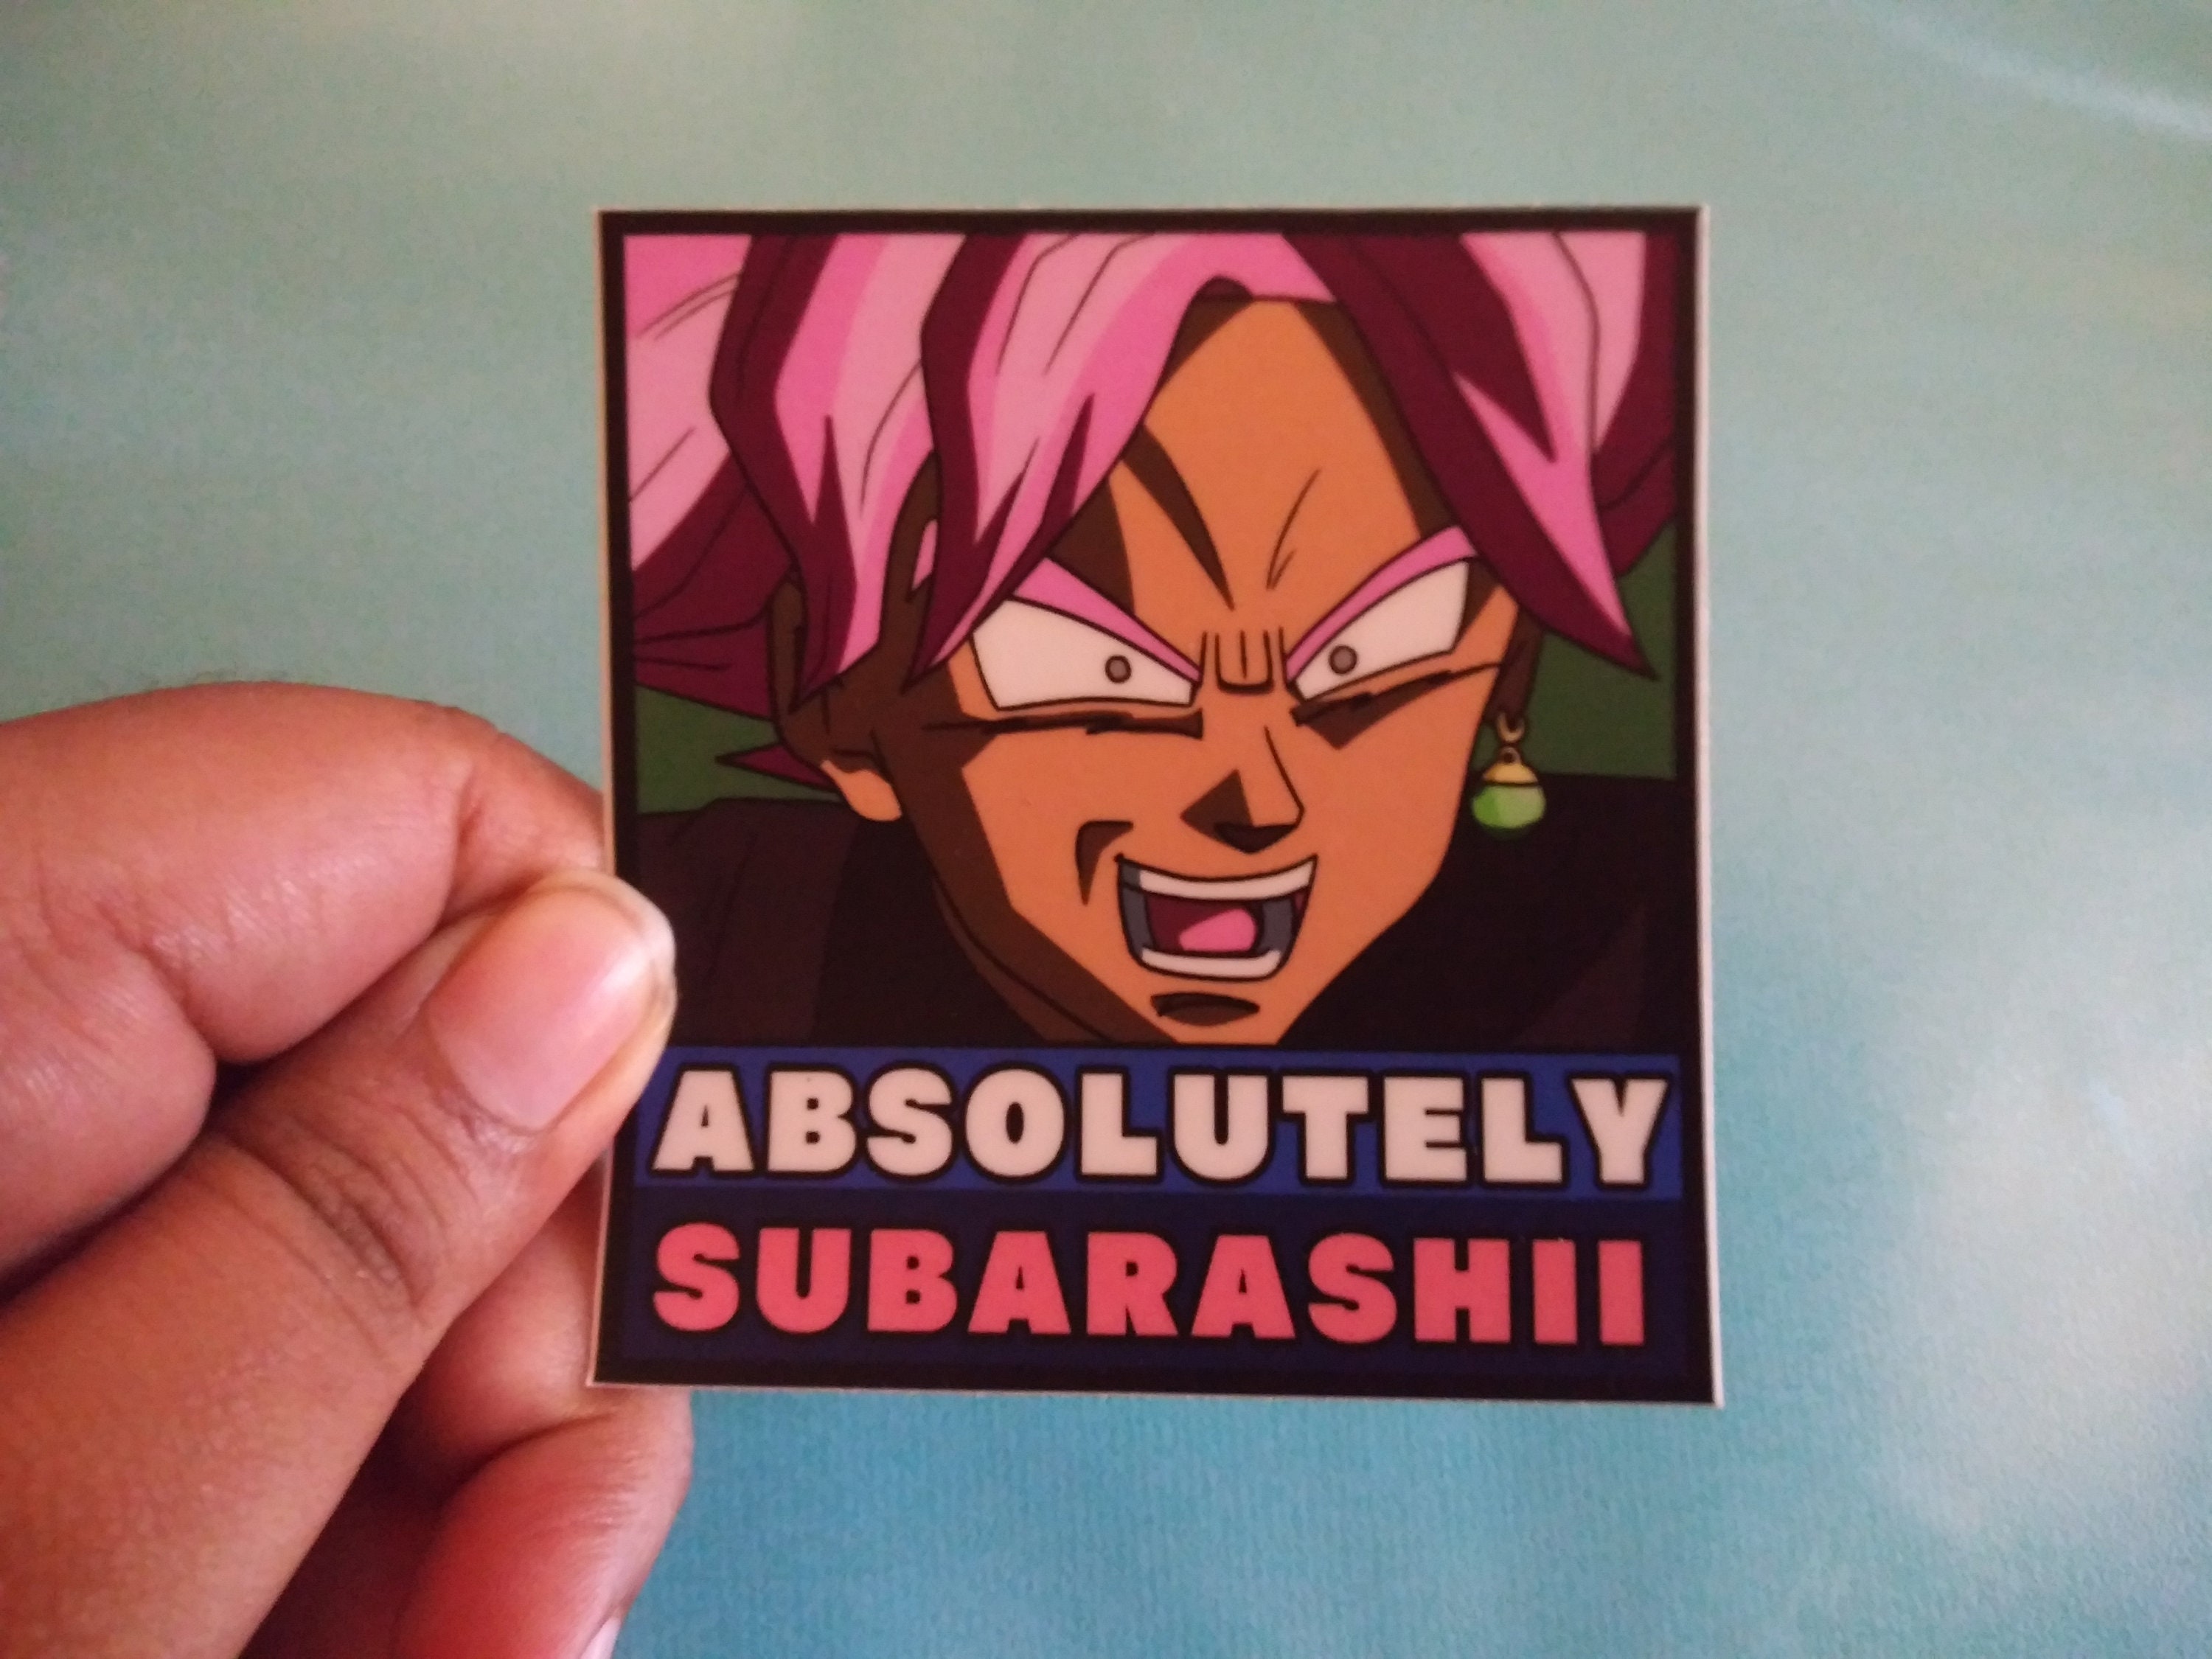 Subarashii memes. Best Collection of funny Subarashii pictures on